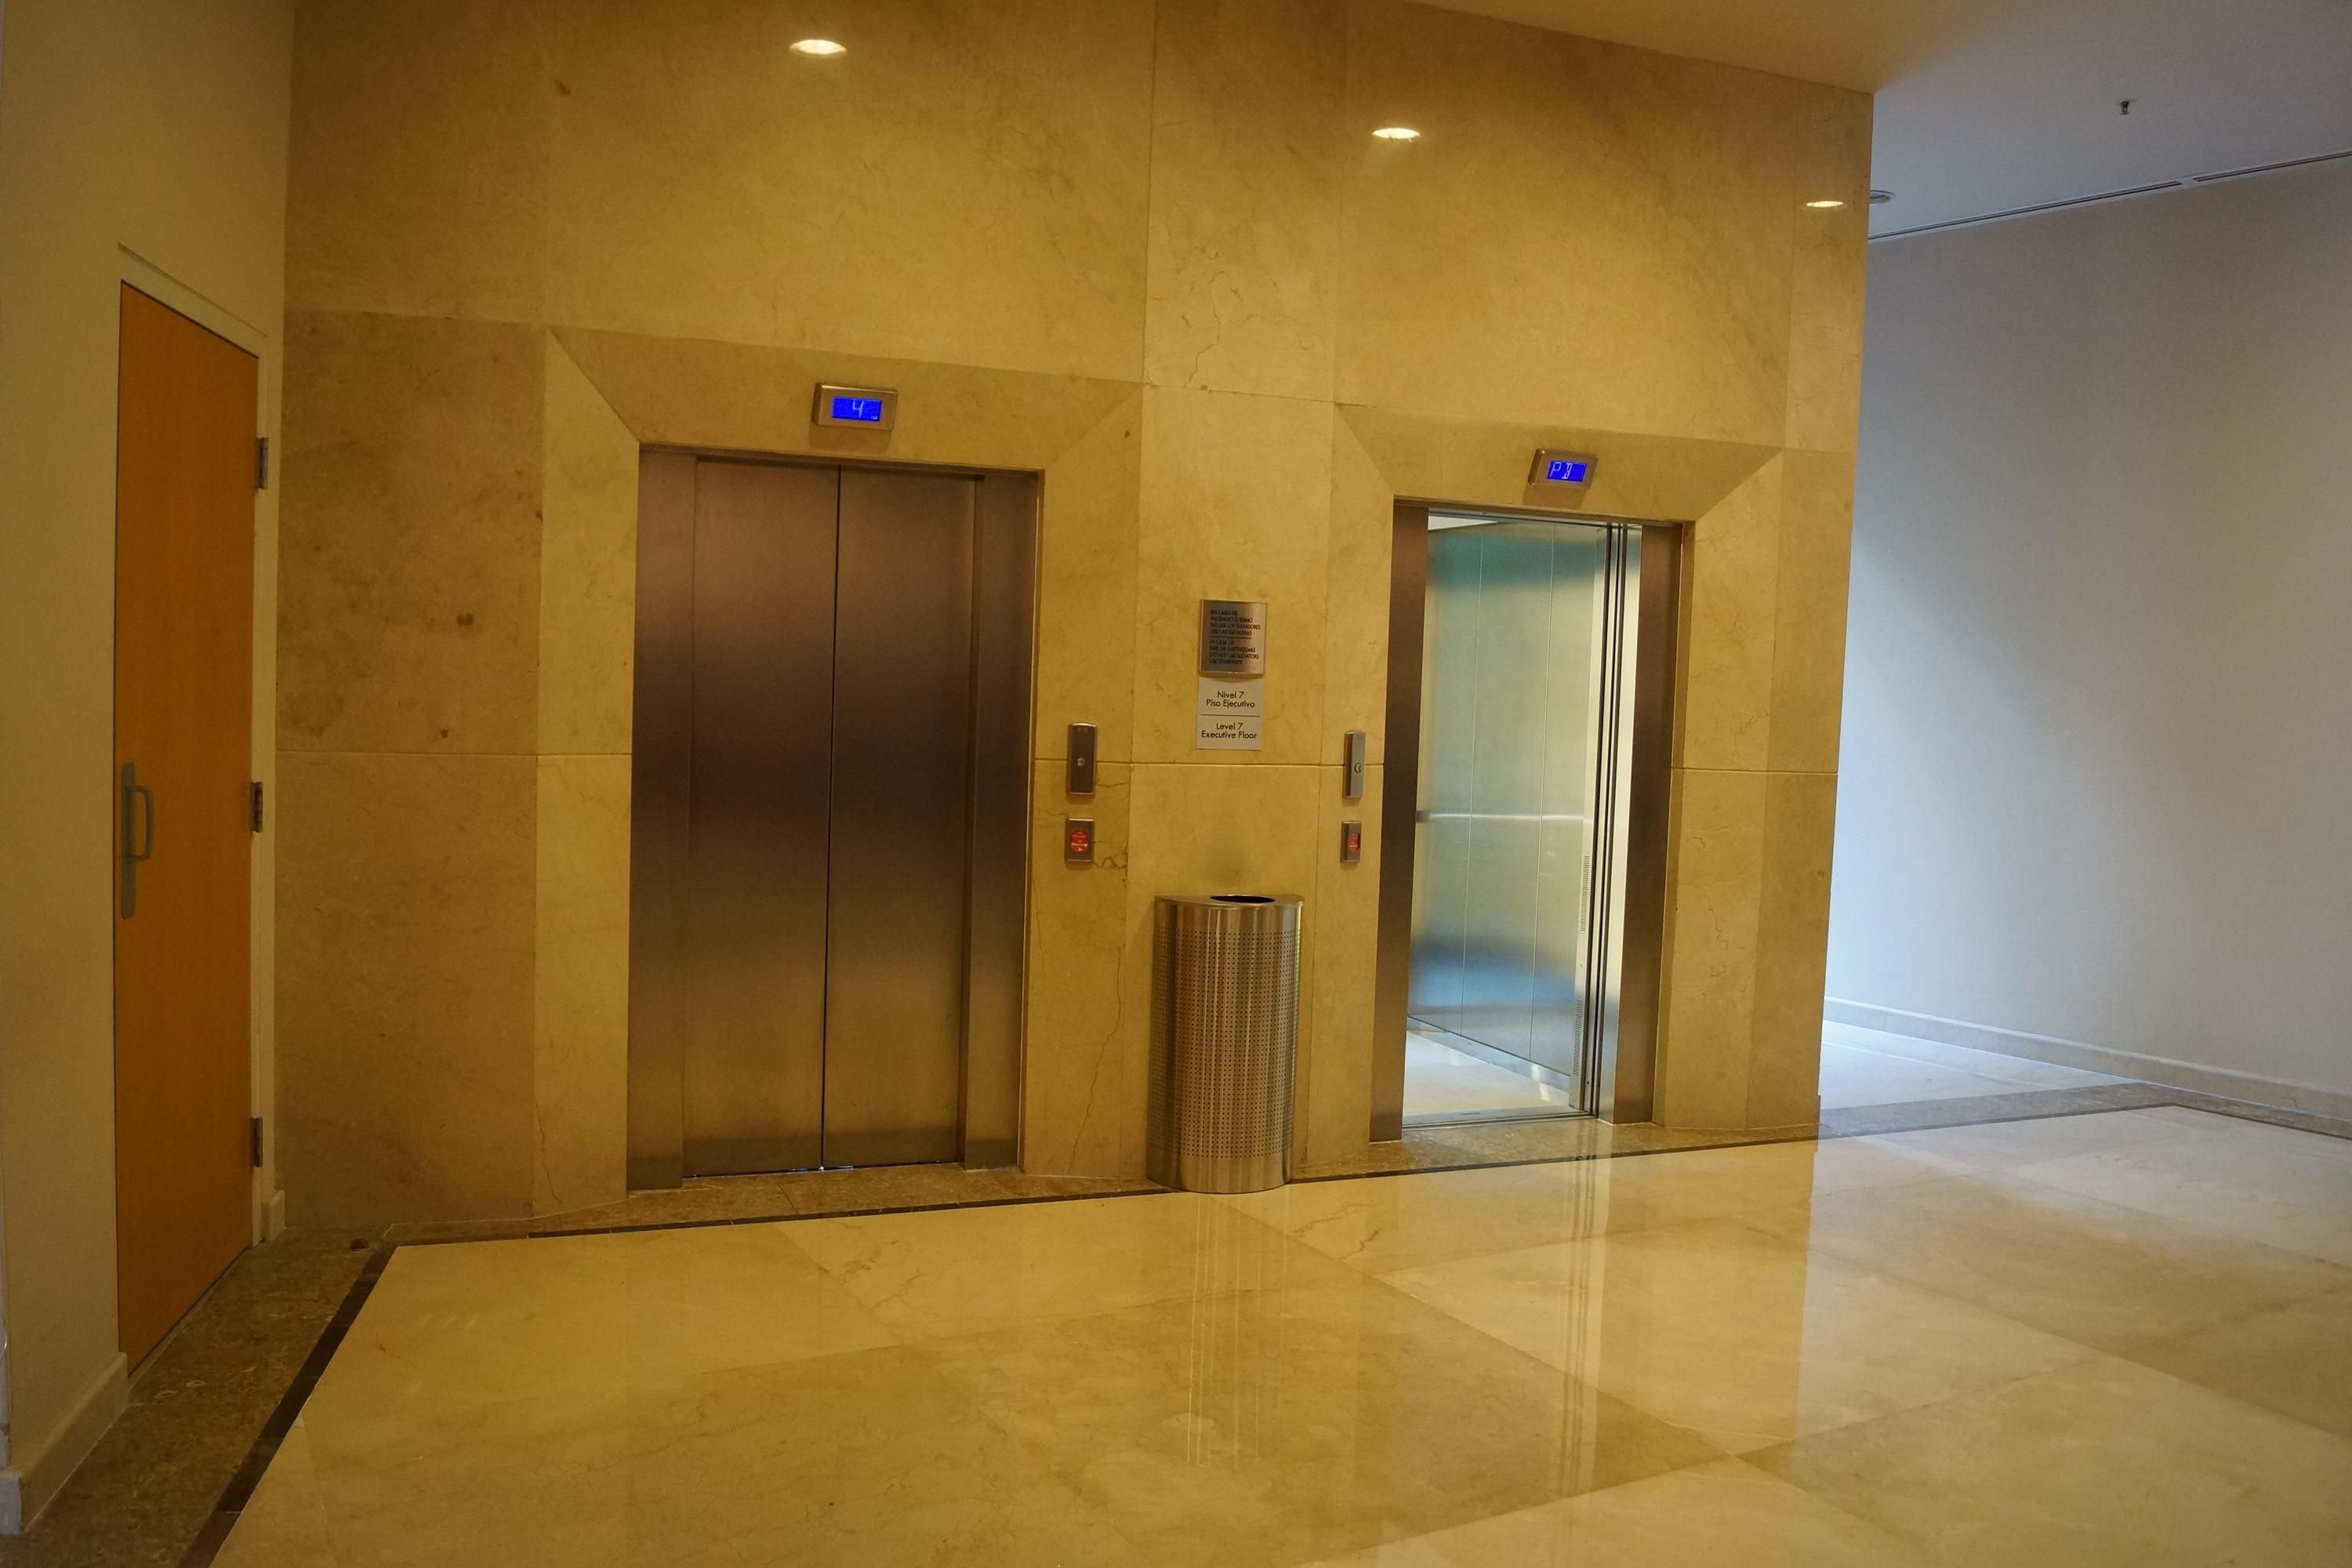 Elevator on lobby